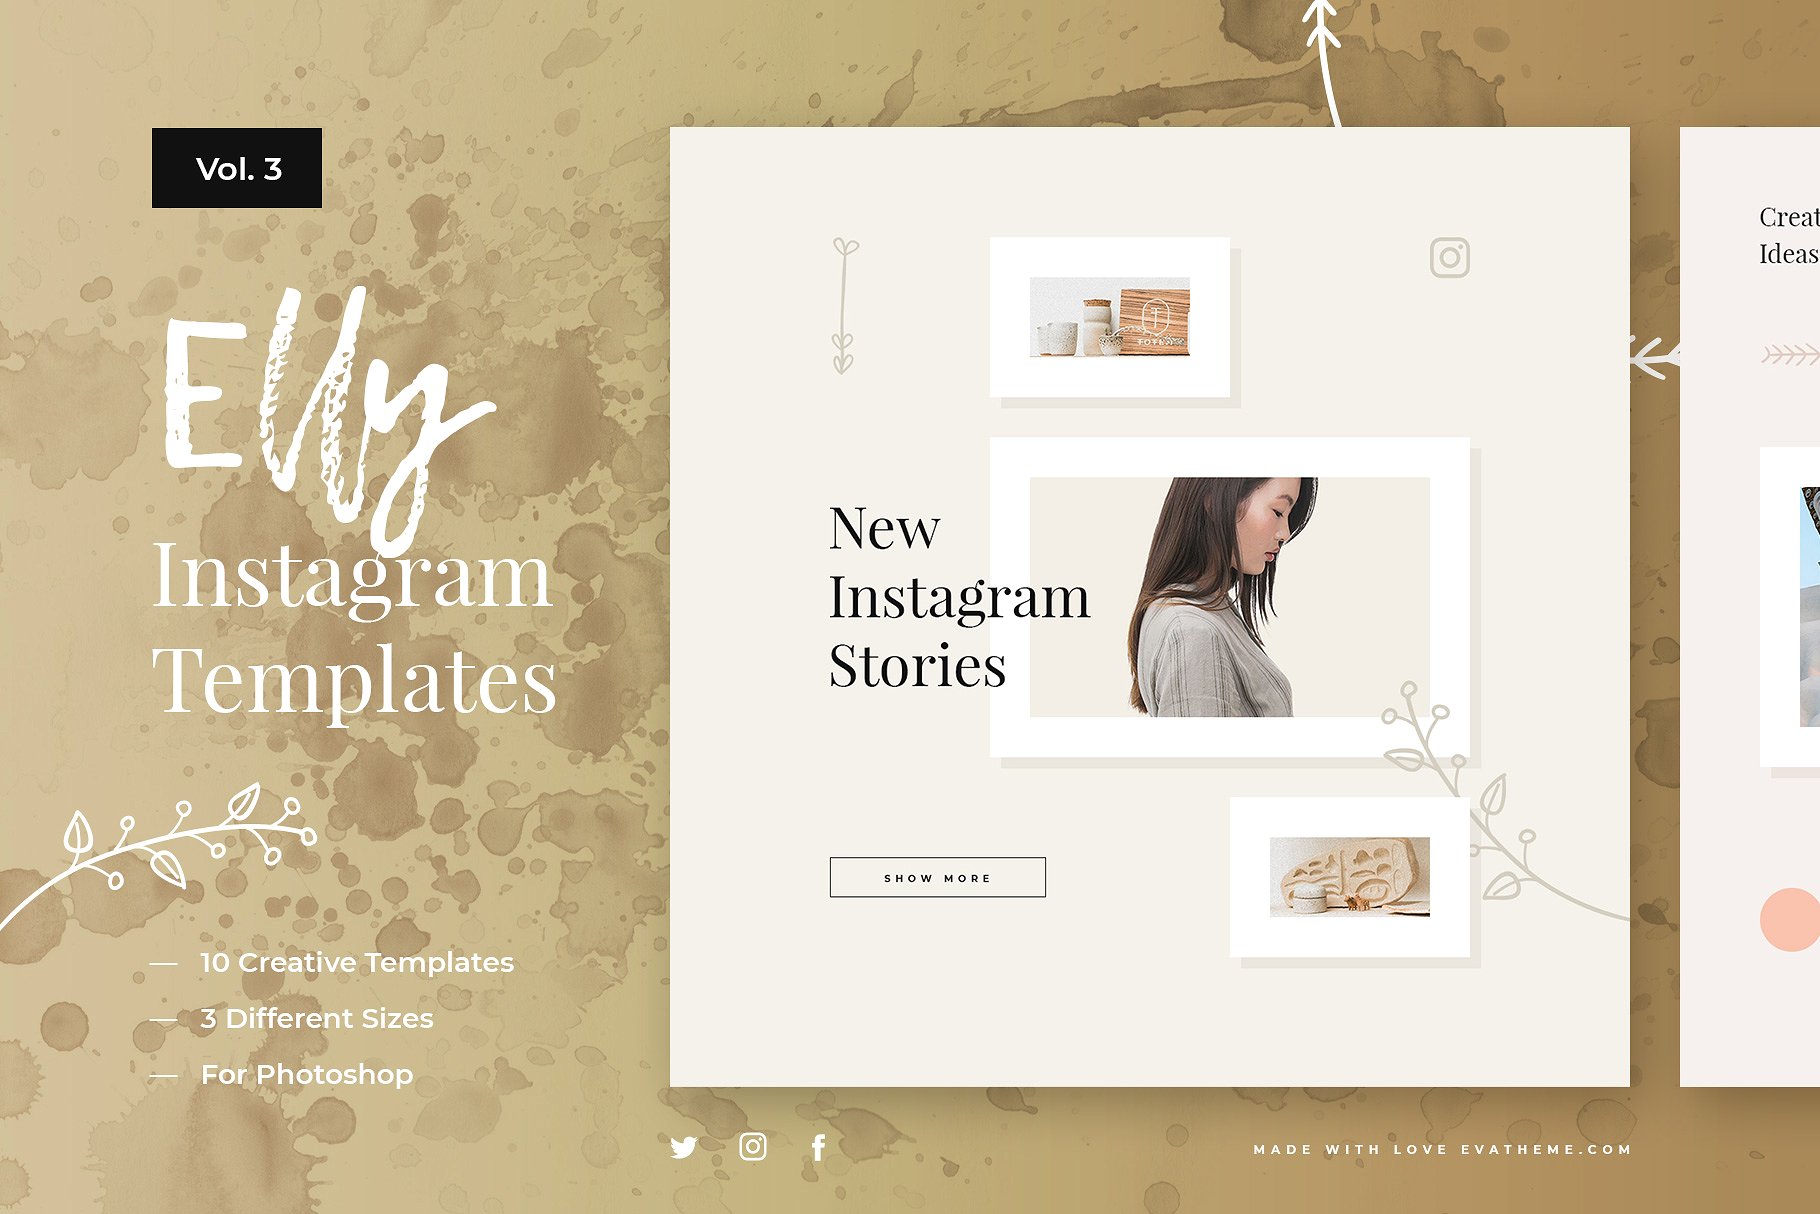 大标题风格Ins贴图模板蚂蚁素材精选v3 Elly Instagram Templates Vol.3插图